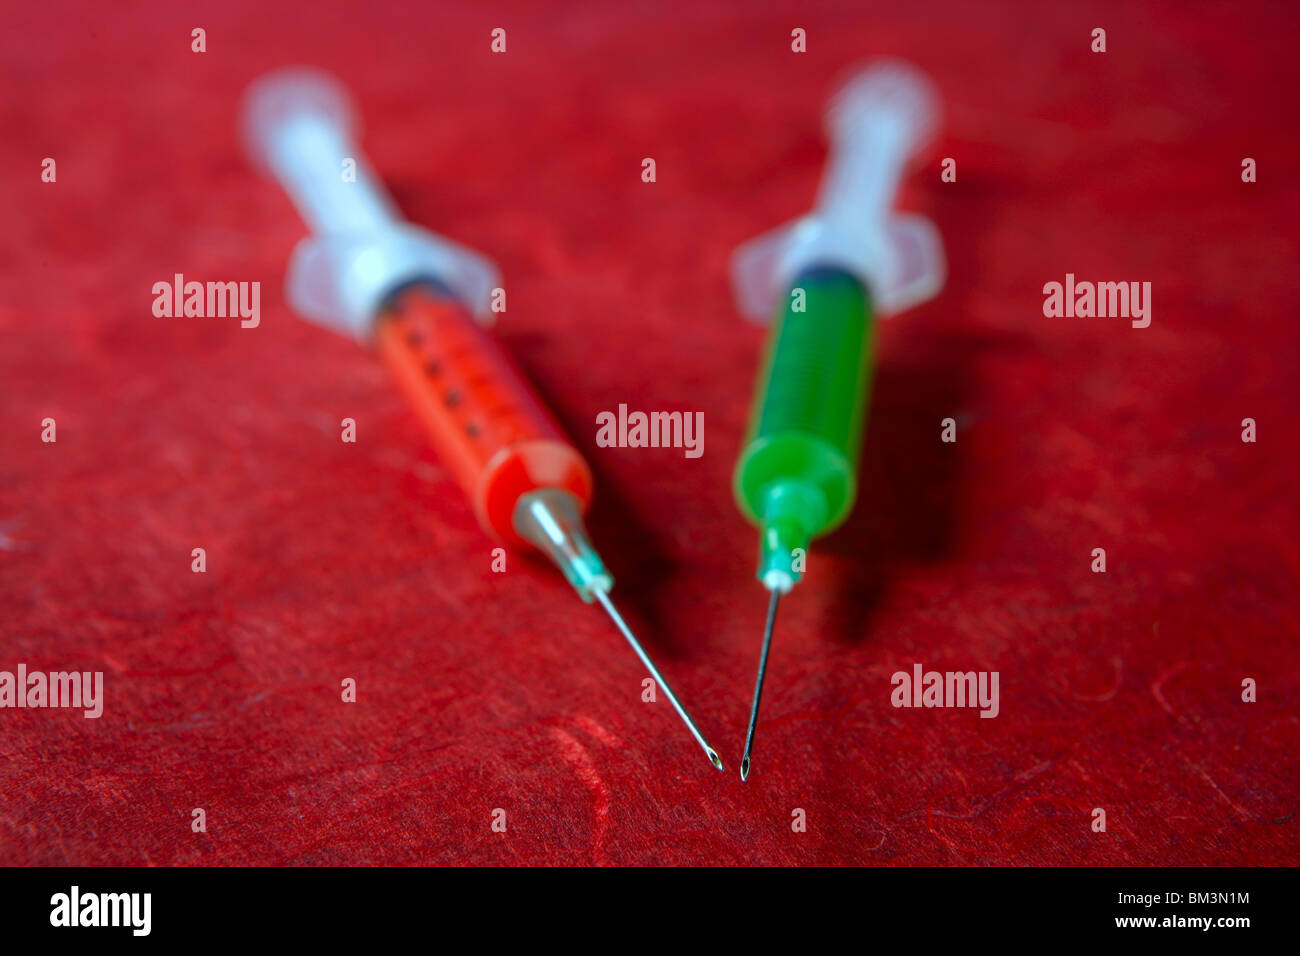 Zwei rote und grüne Spritze, Gesundheit, sucht, medizinische Forschung Metapher Stockfoto